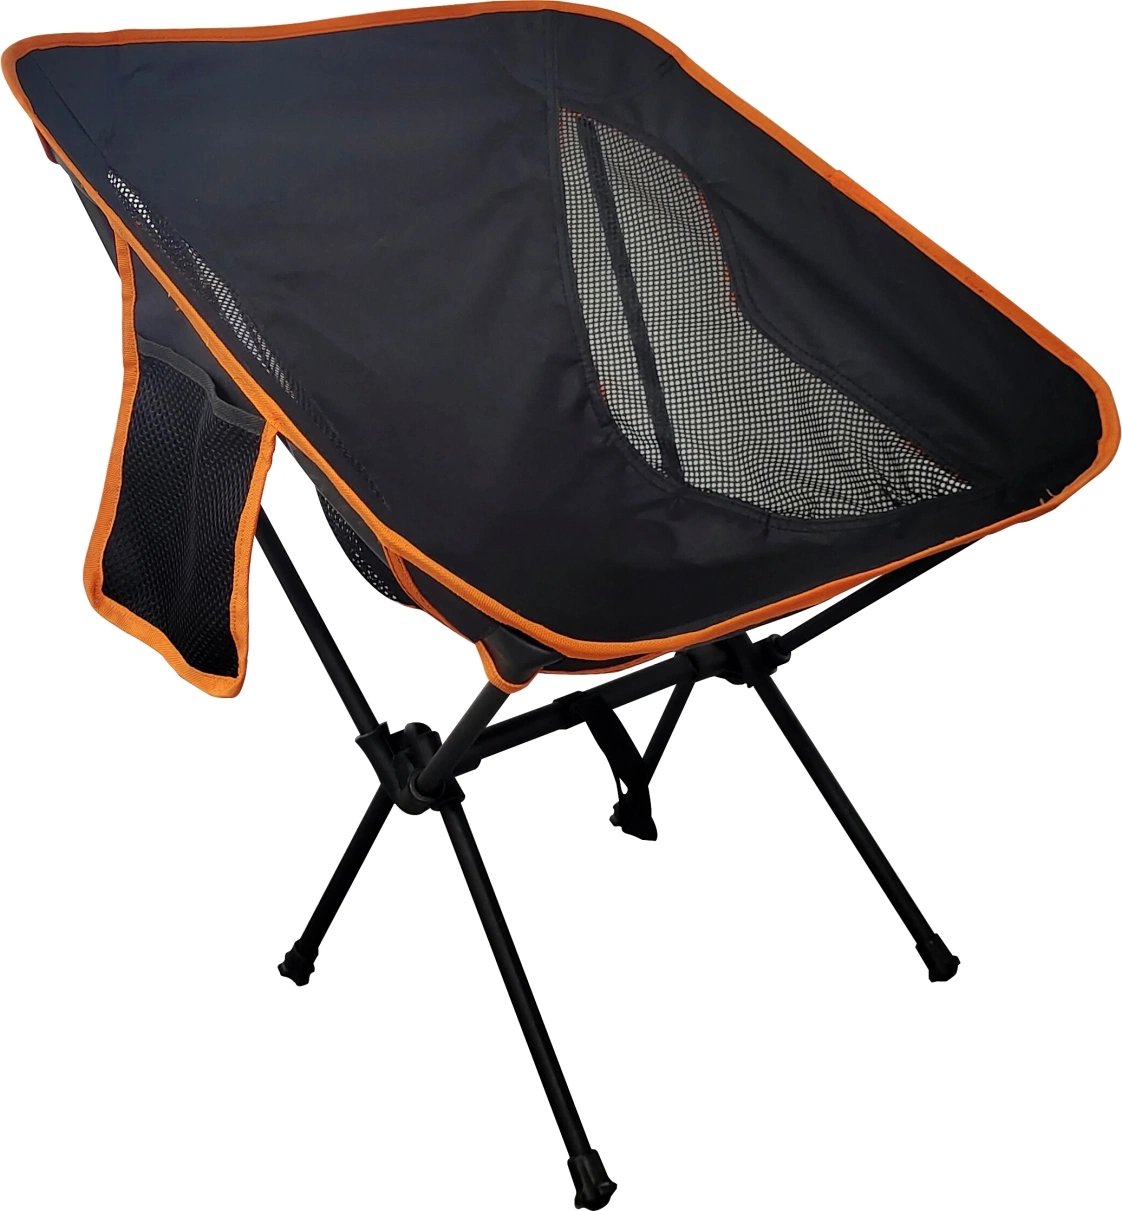 Wholesale/Supplier Outdoor Garden Picnic Portable Folding Camping Space Chair Moon Beach Chair